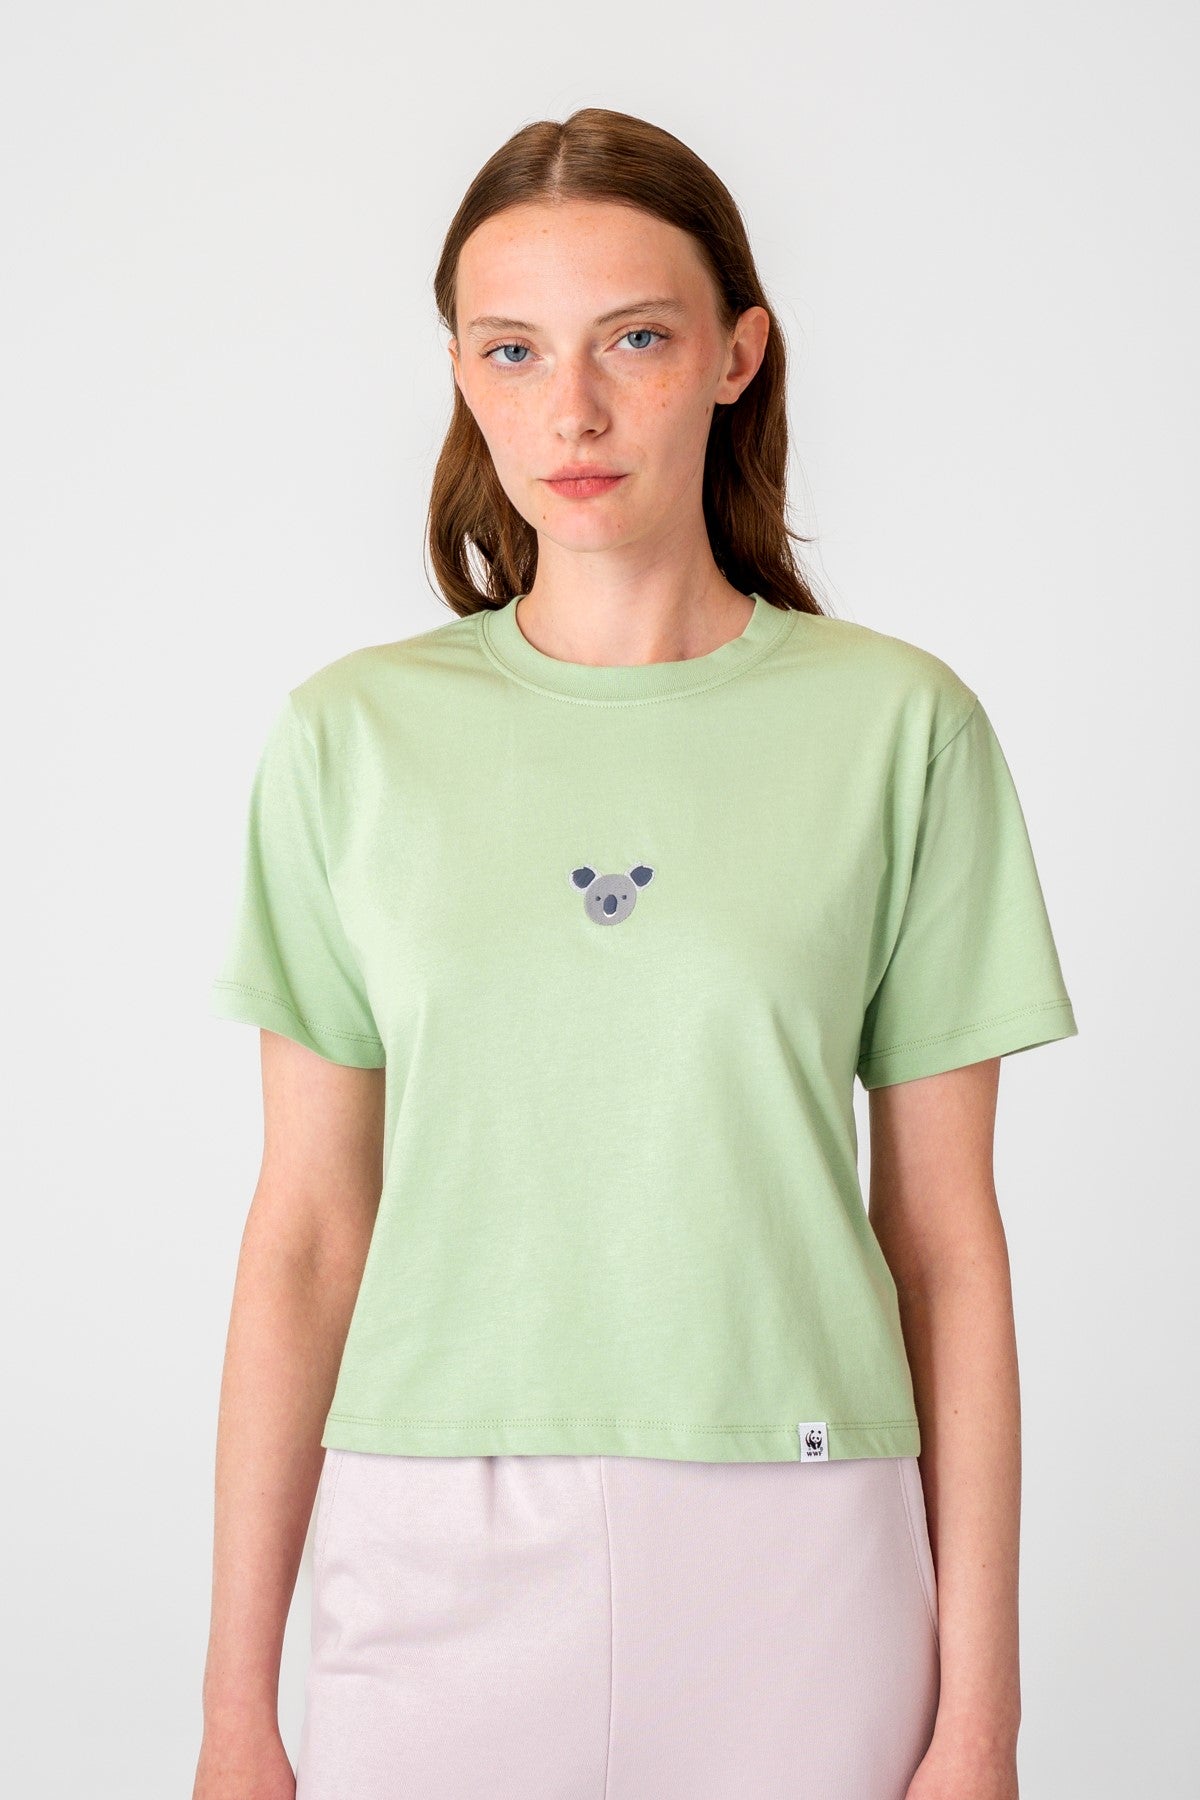 Koala Supreme Kadın T-shirt  - Su Yeşili